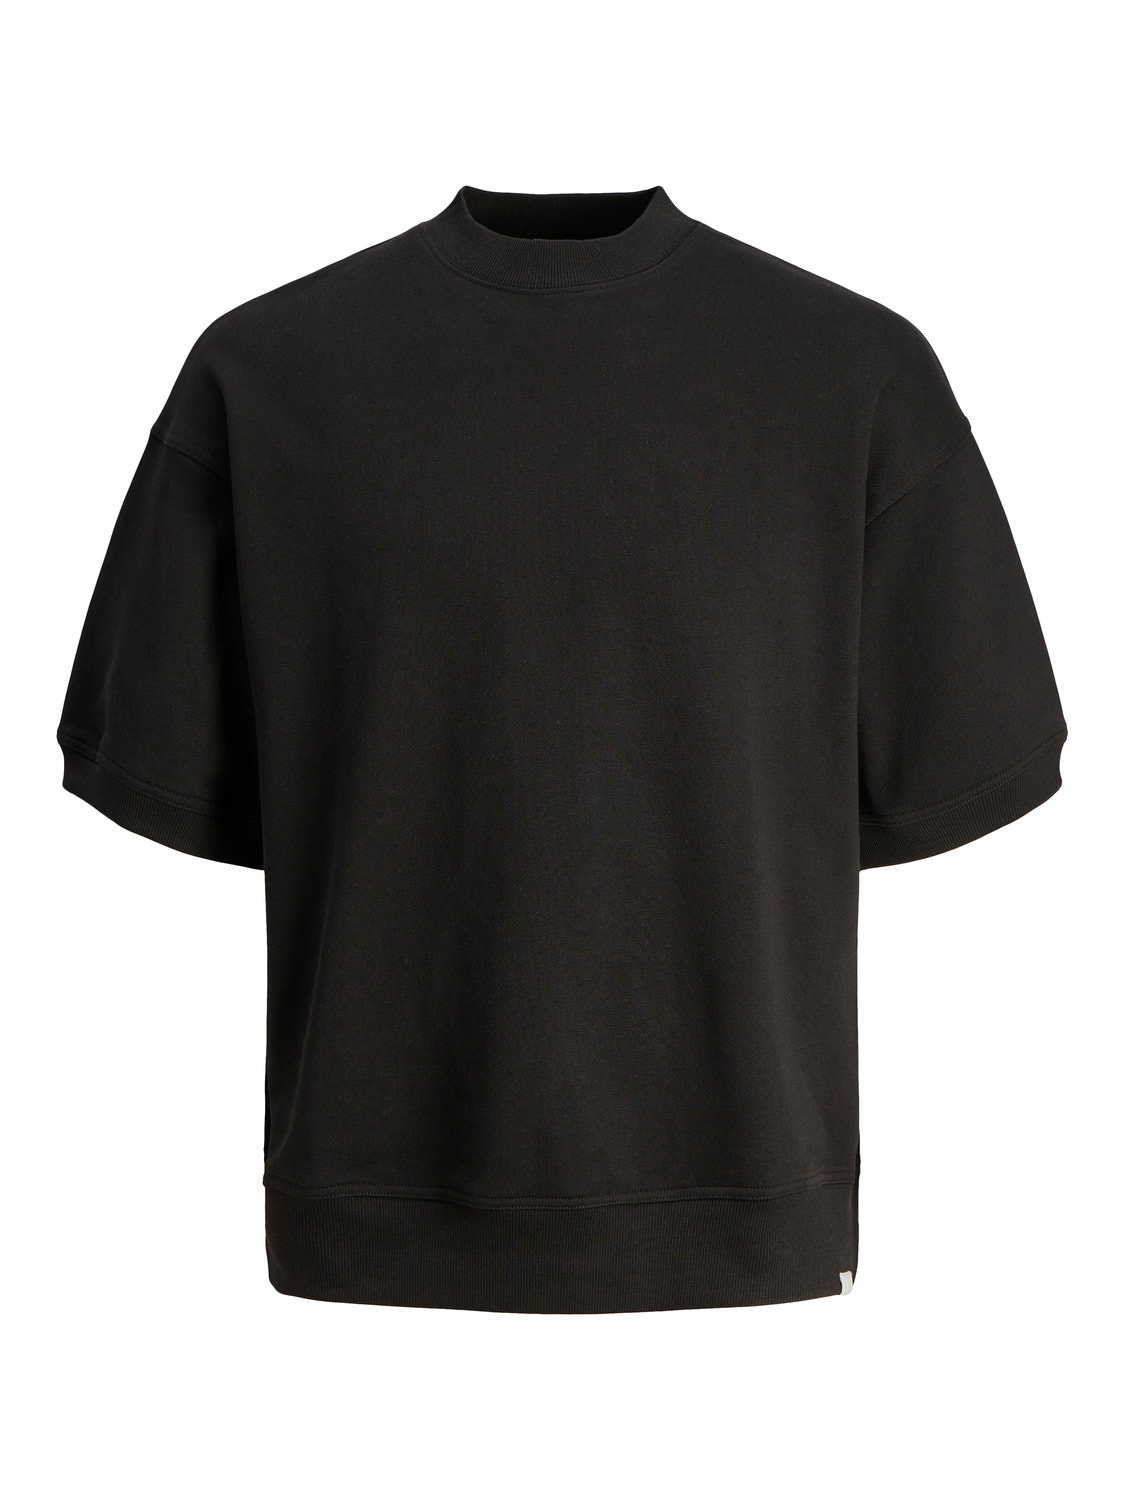 Jack & Jones Wide Fit Crew neck Sweatshirt -Black - 12255219